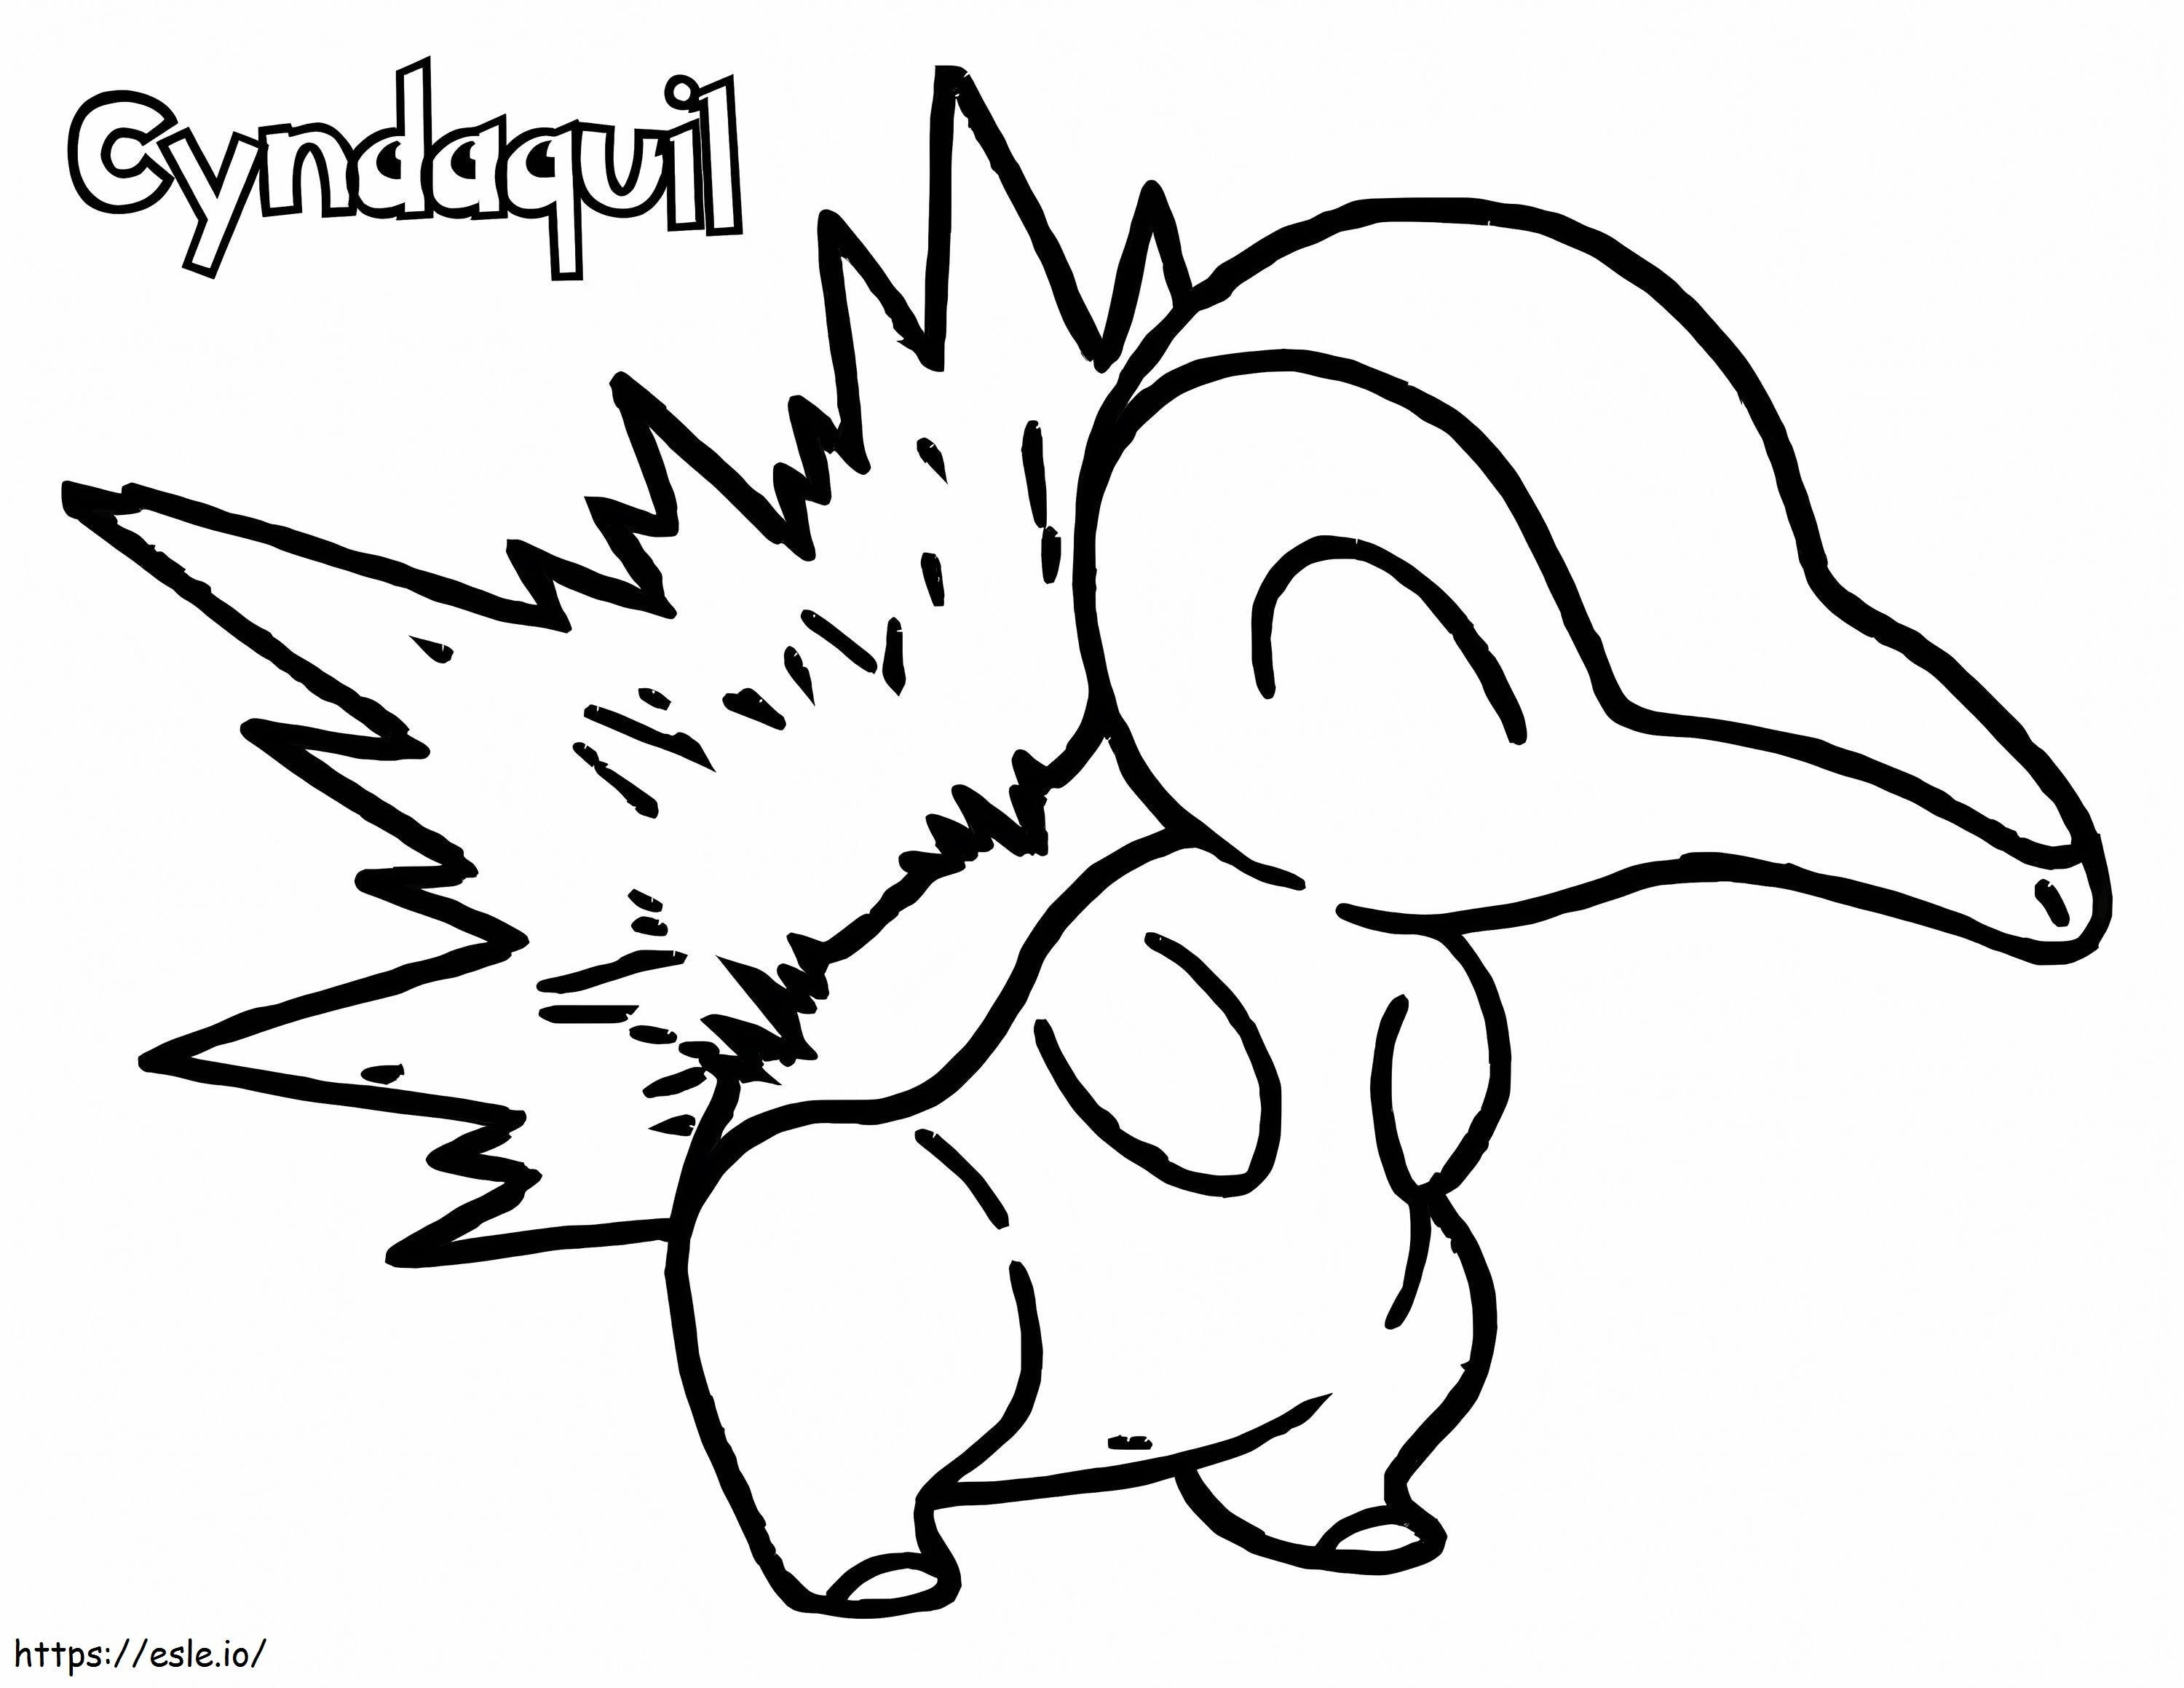 Cyndaquil Ein Pokémon ausmalbilder